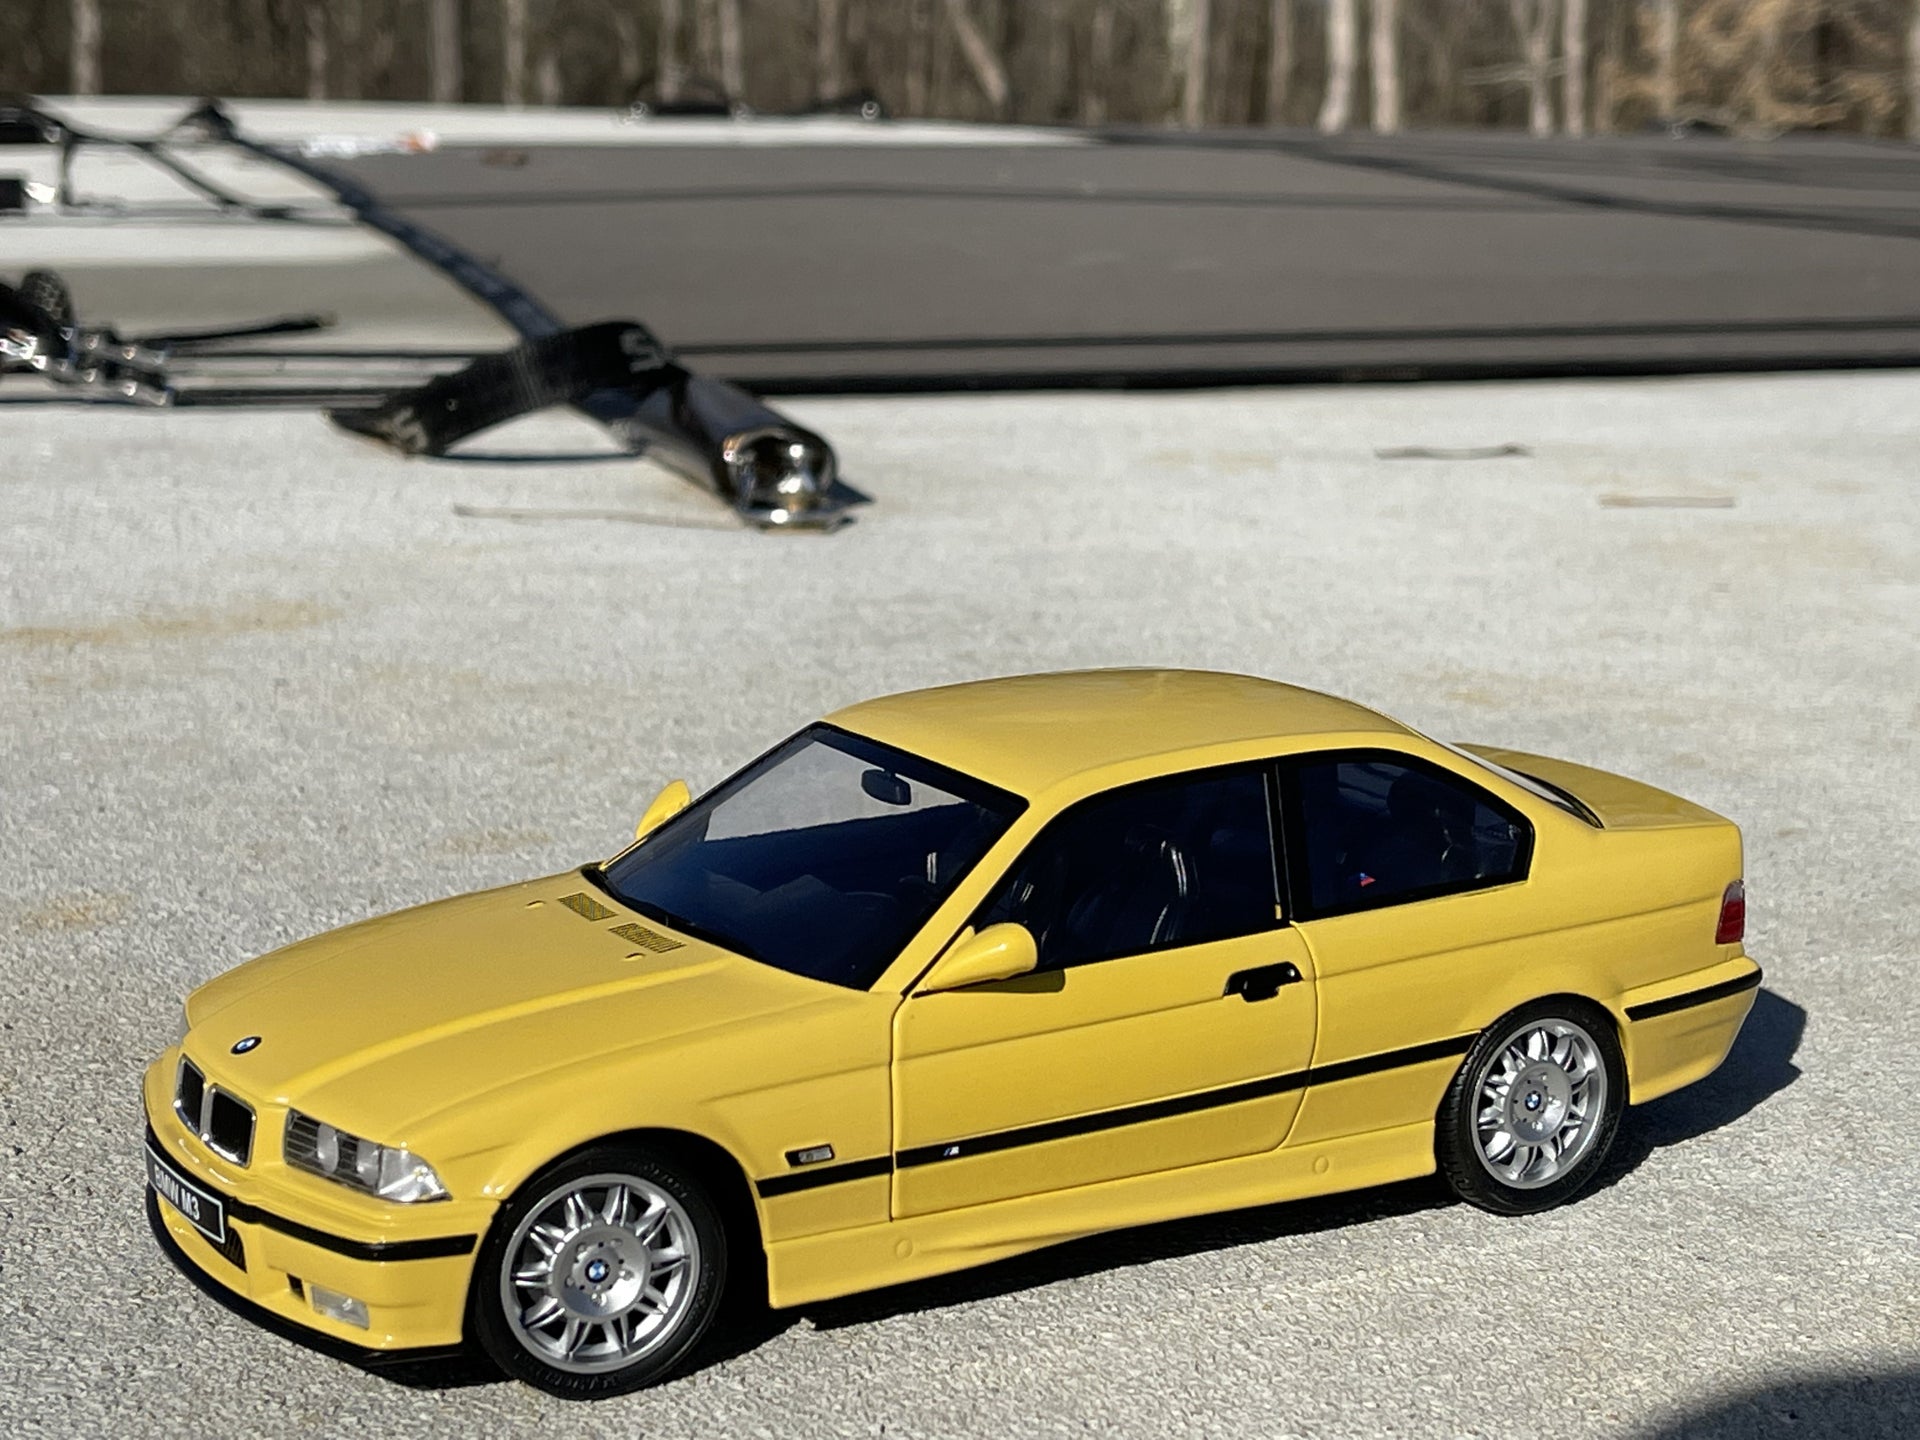 The BMW M3 E36 Compact